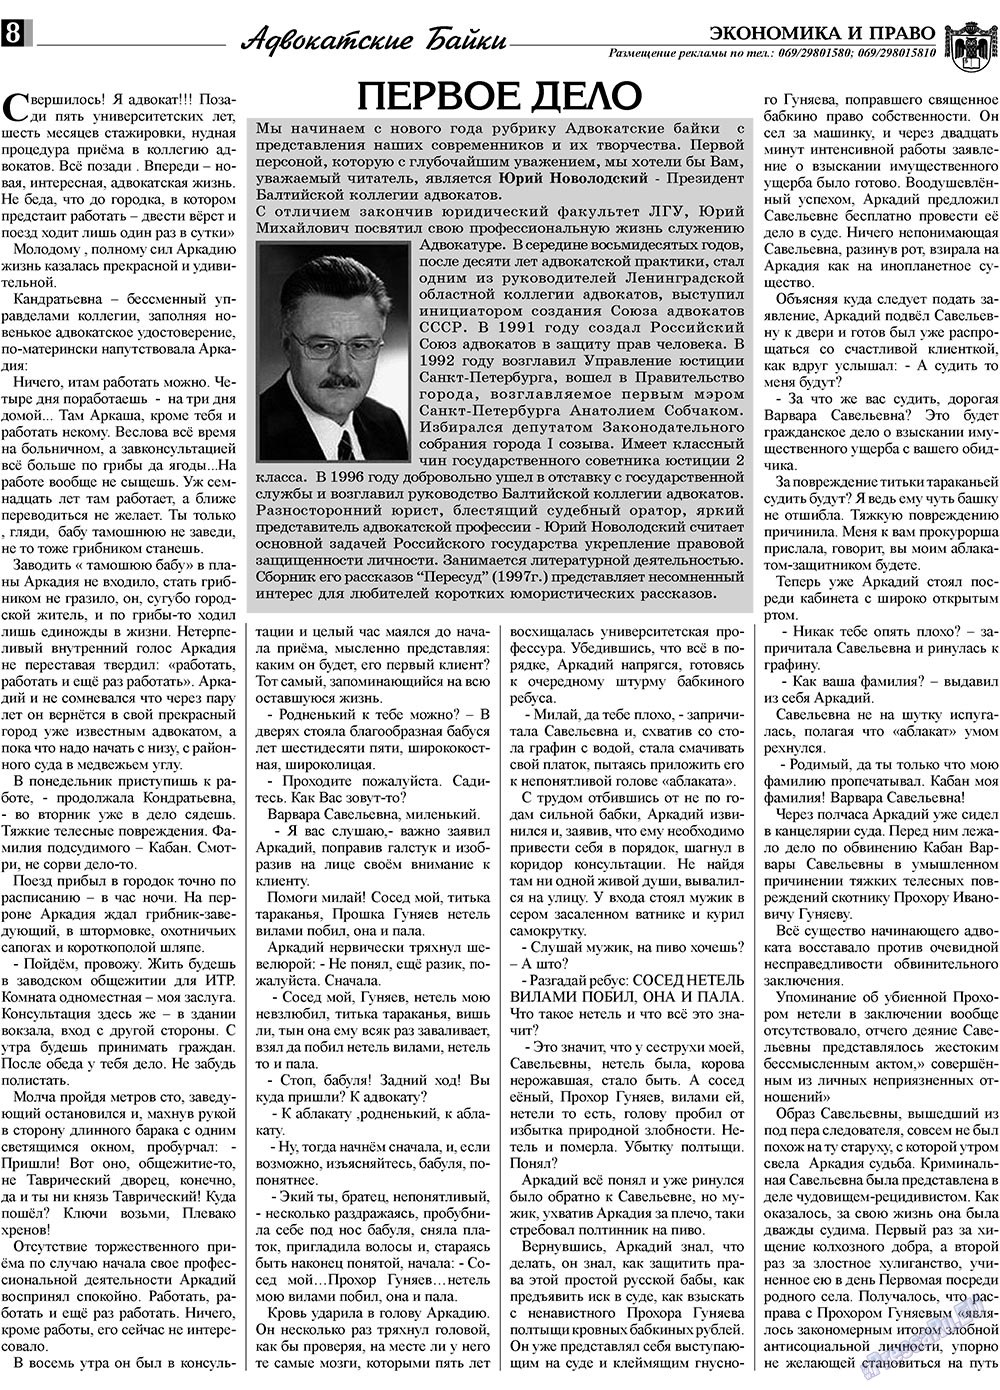 Экономика и право, газета. 2010 №1 стр.8